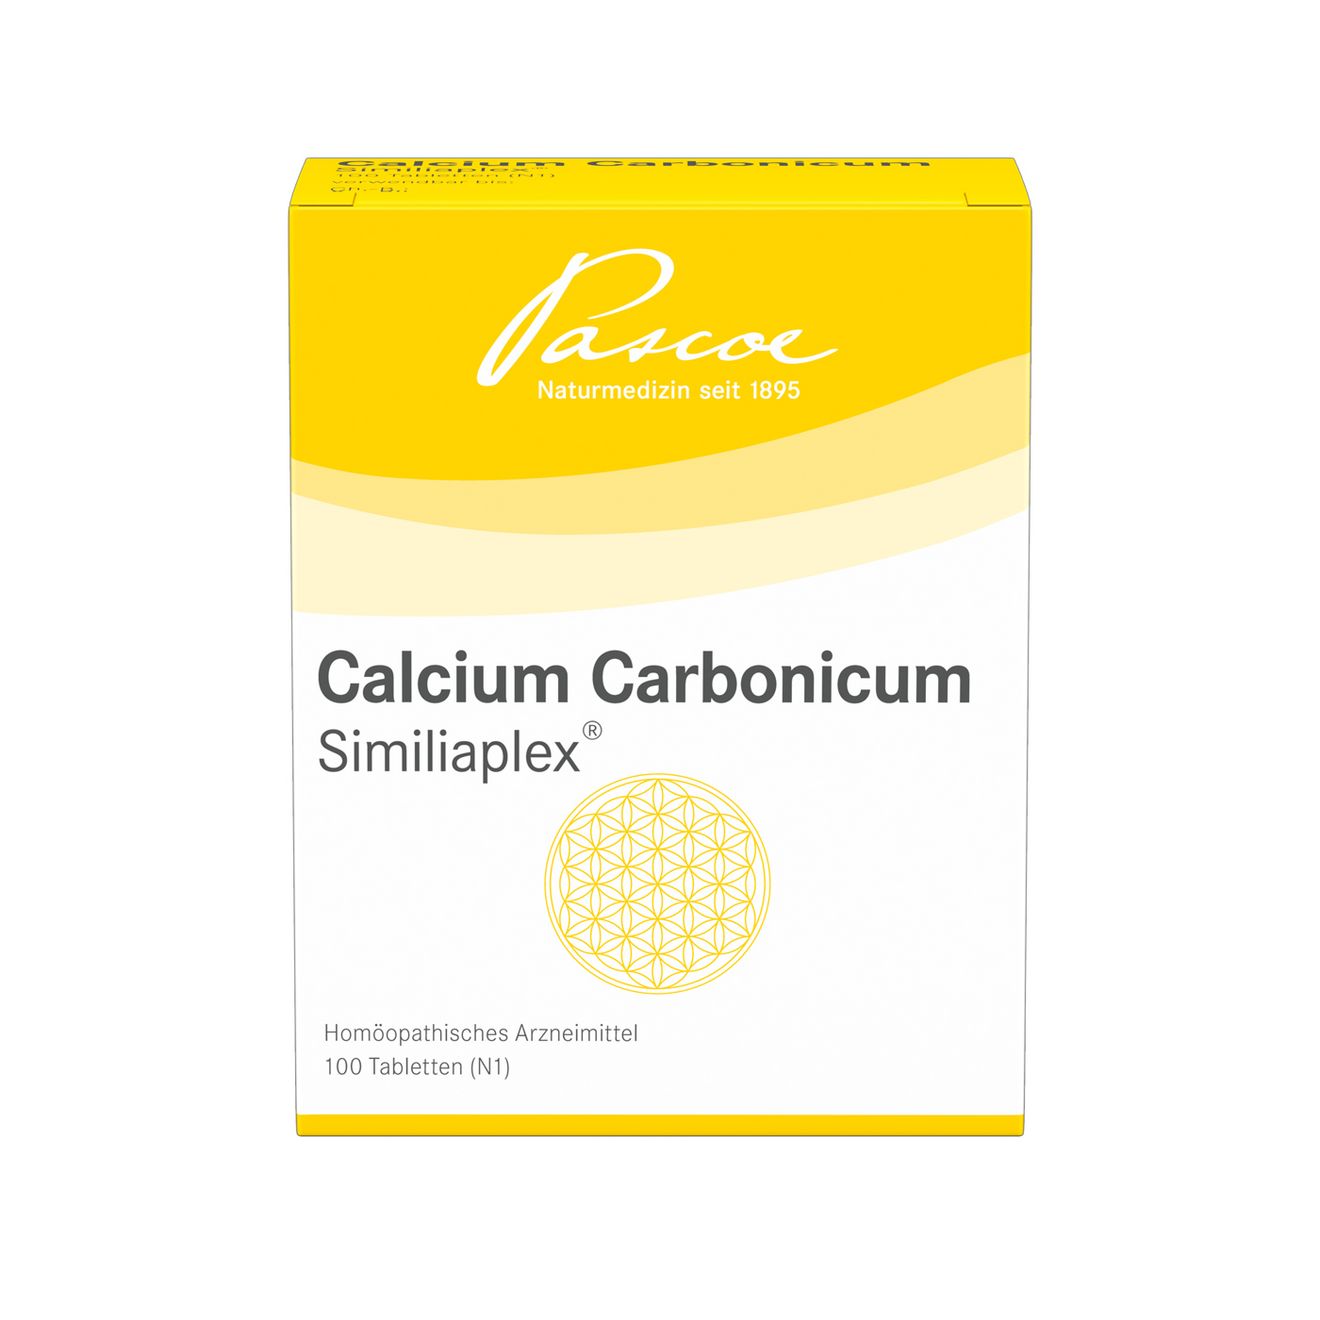 Calcium Carbonicum SimiliaplexCalcium Carbonicum Similiaplex